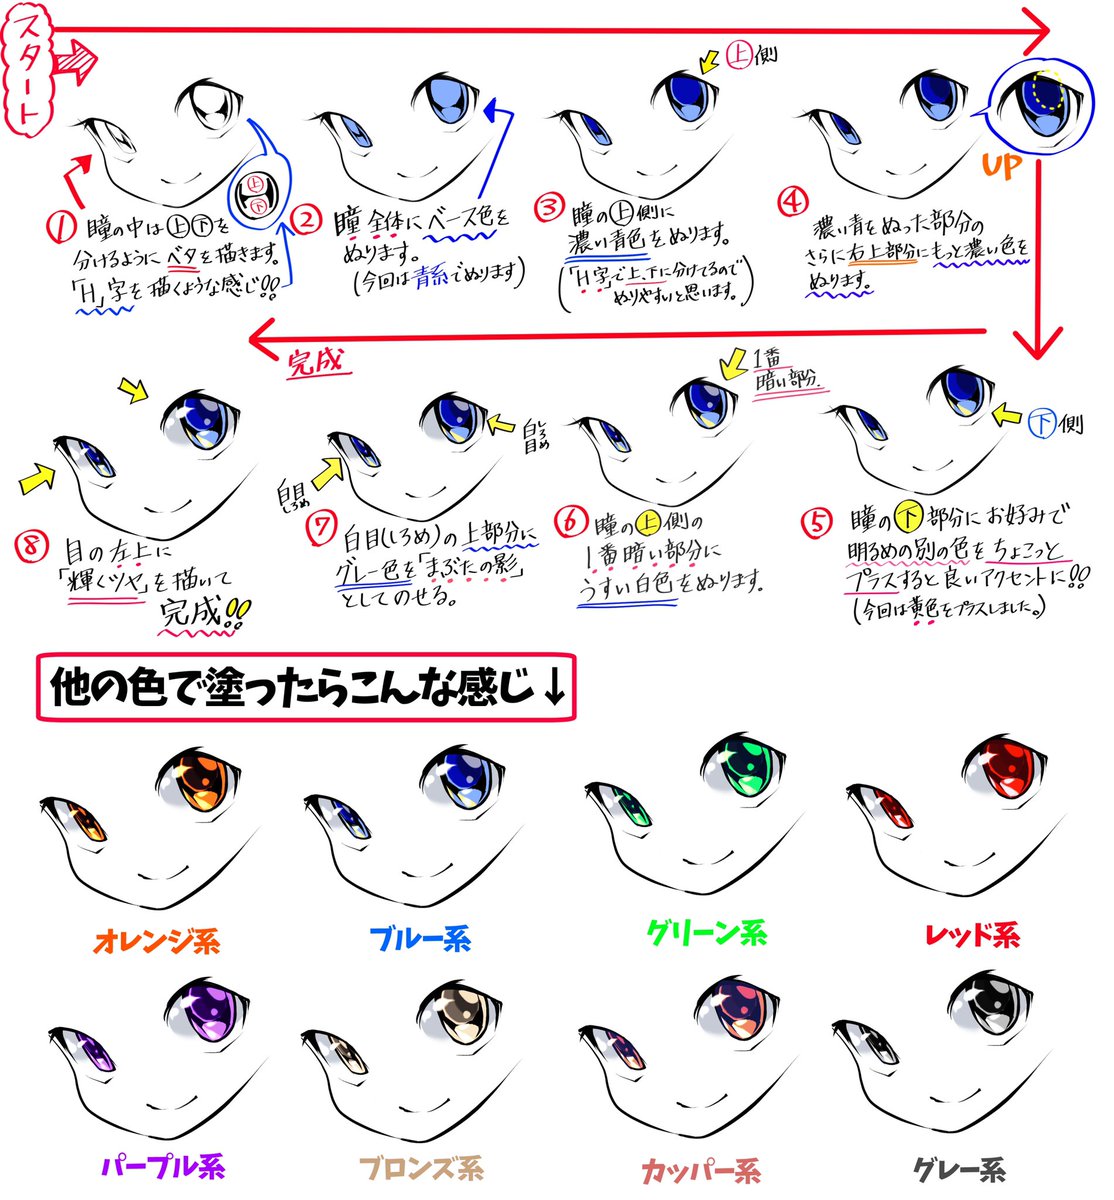 吉村拓也 イラスト講座 綺麗な宝石眼 の描き方 T Co Xxombwe5ut Twitter